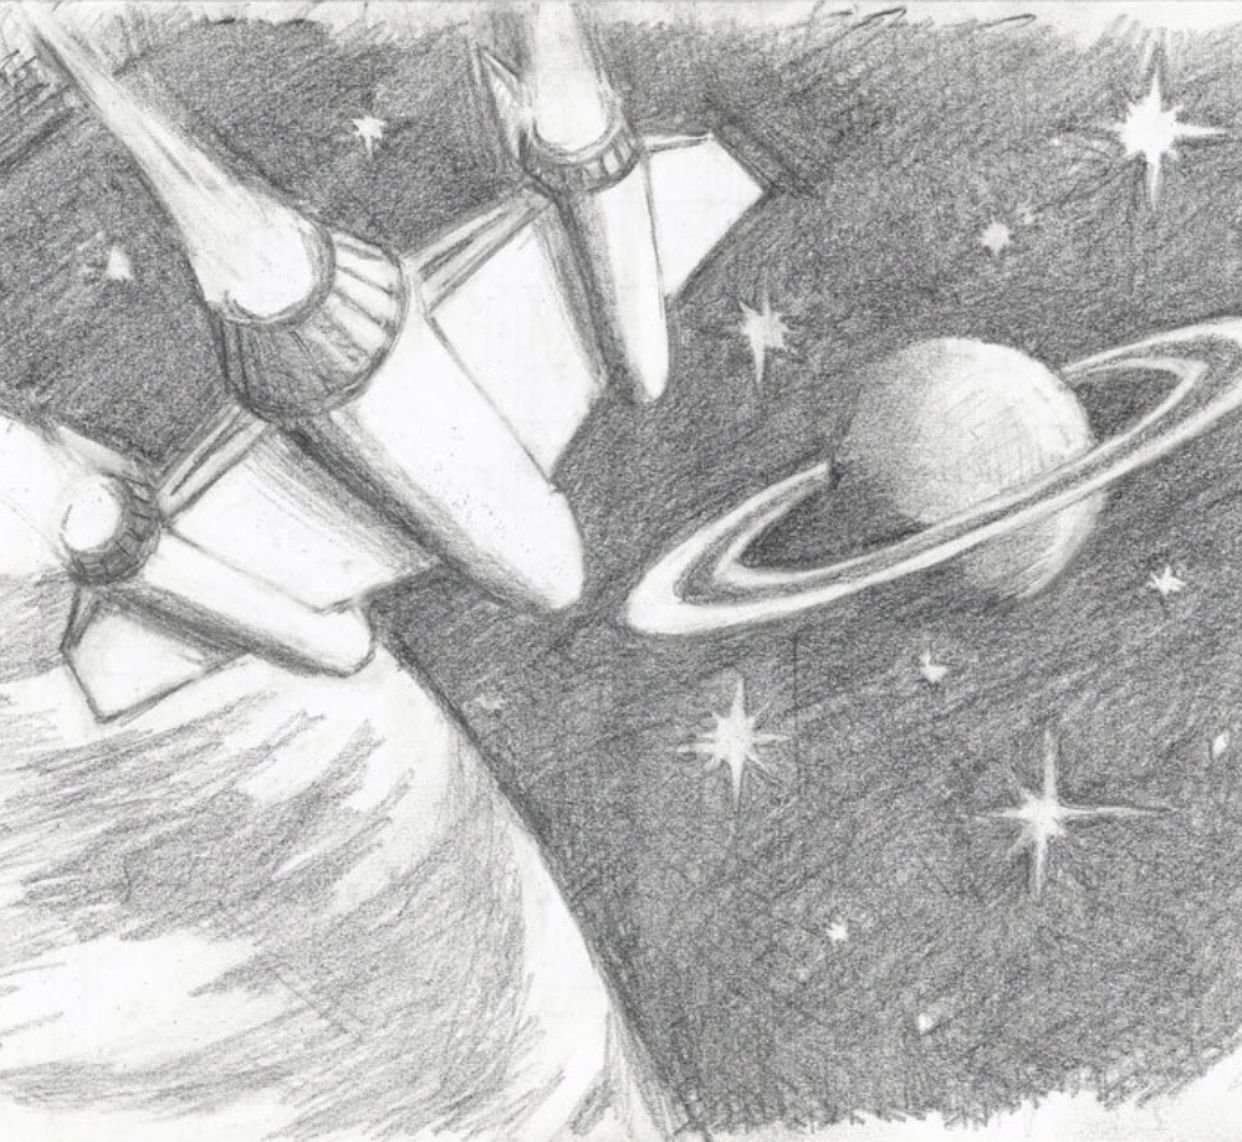 День космонавтики рисунок легкий